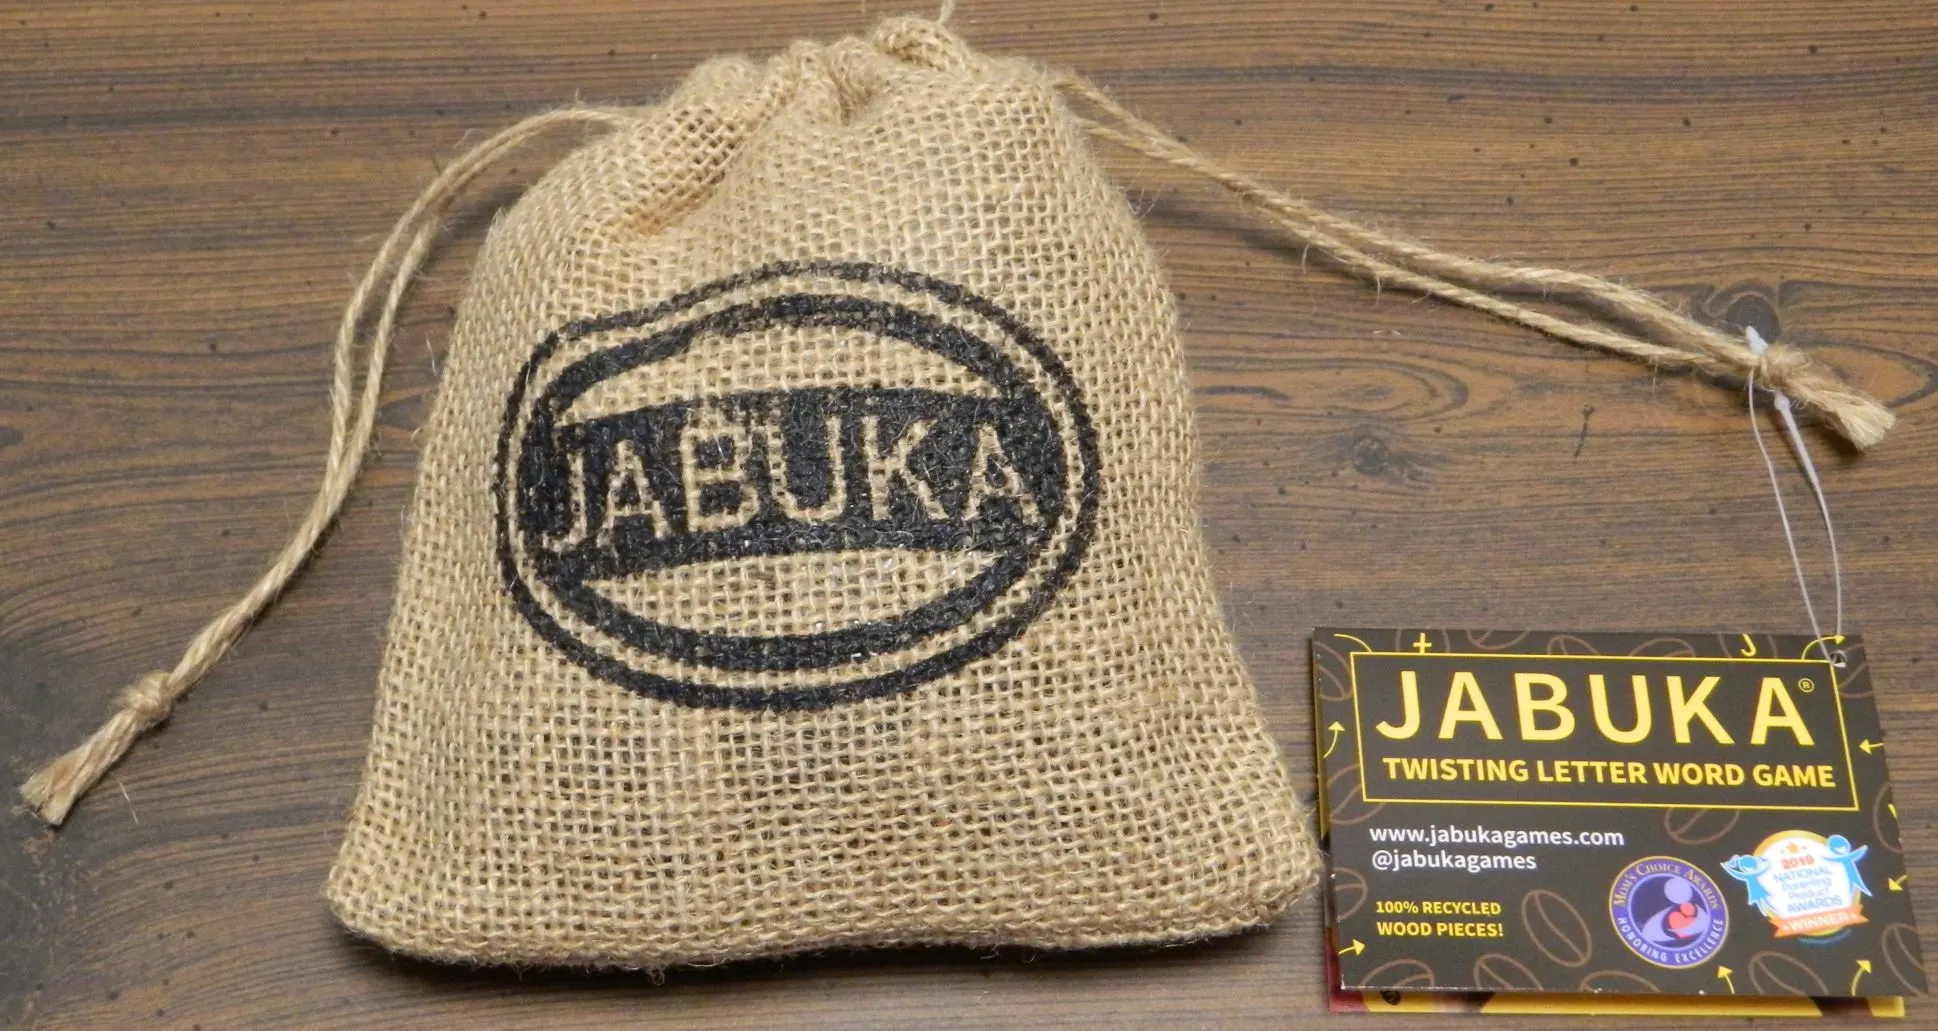 Bag for Jabuka